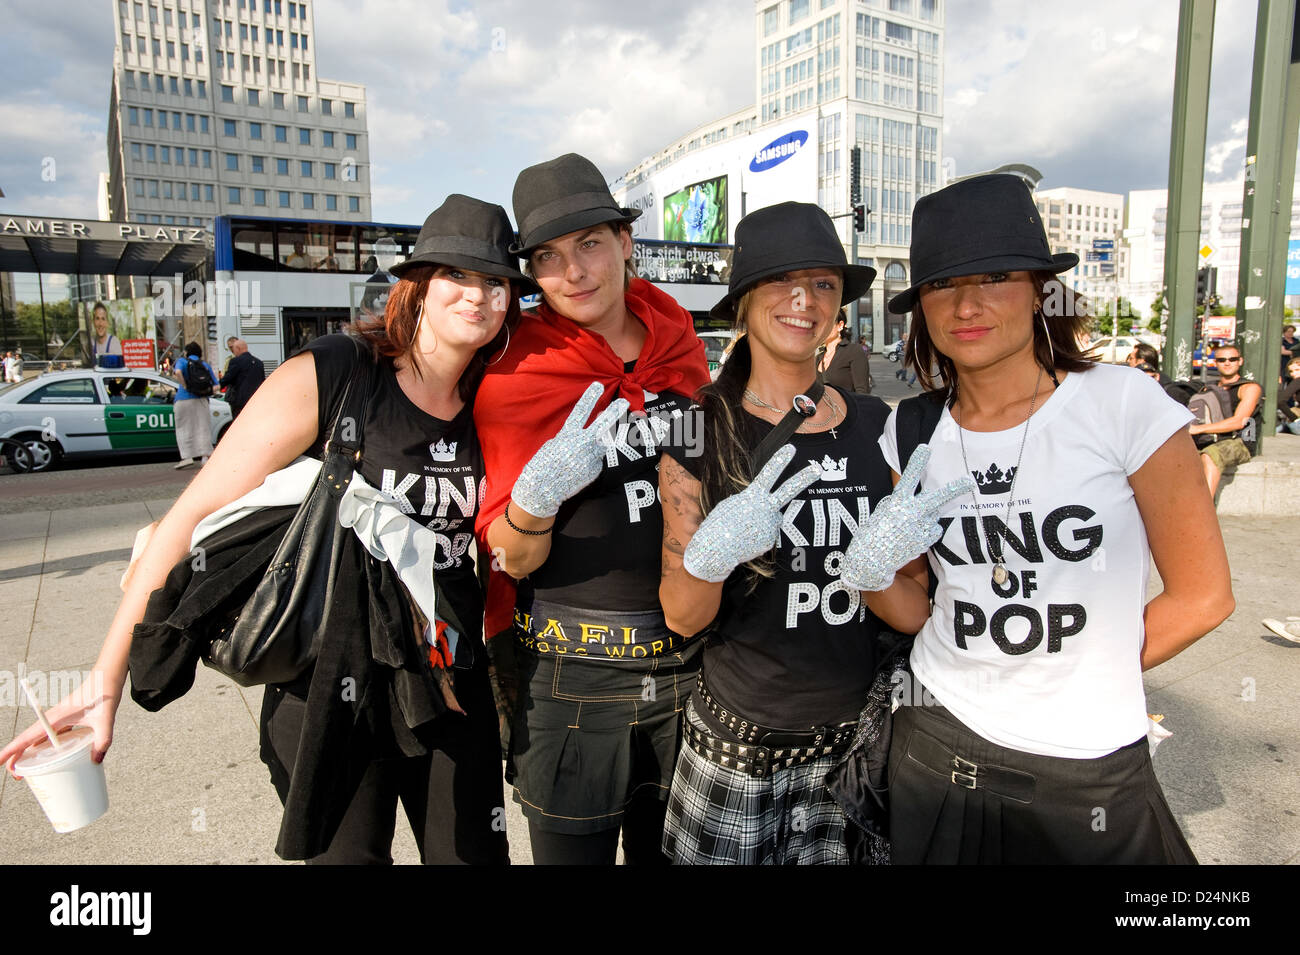 Berlin, Allemagne, les jeunes femmes se disent eux-mêmes comme des fans de Michael Jackson Banque D'Images